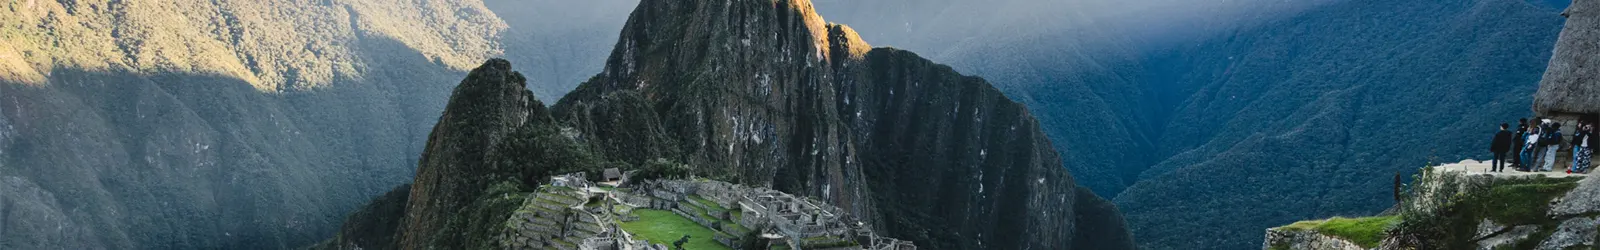 Maras – Moray y Machu Picchu 2D/1N